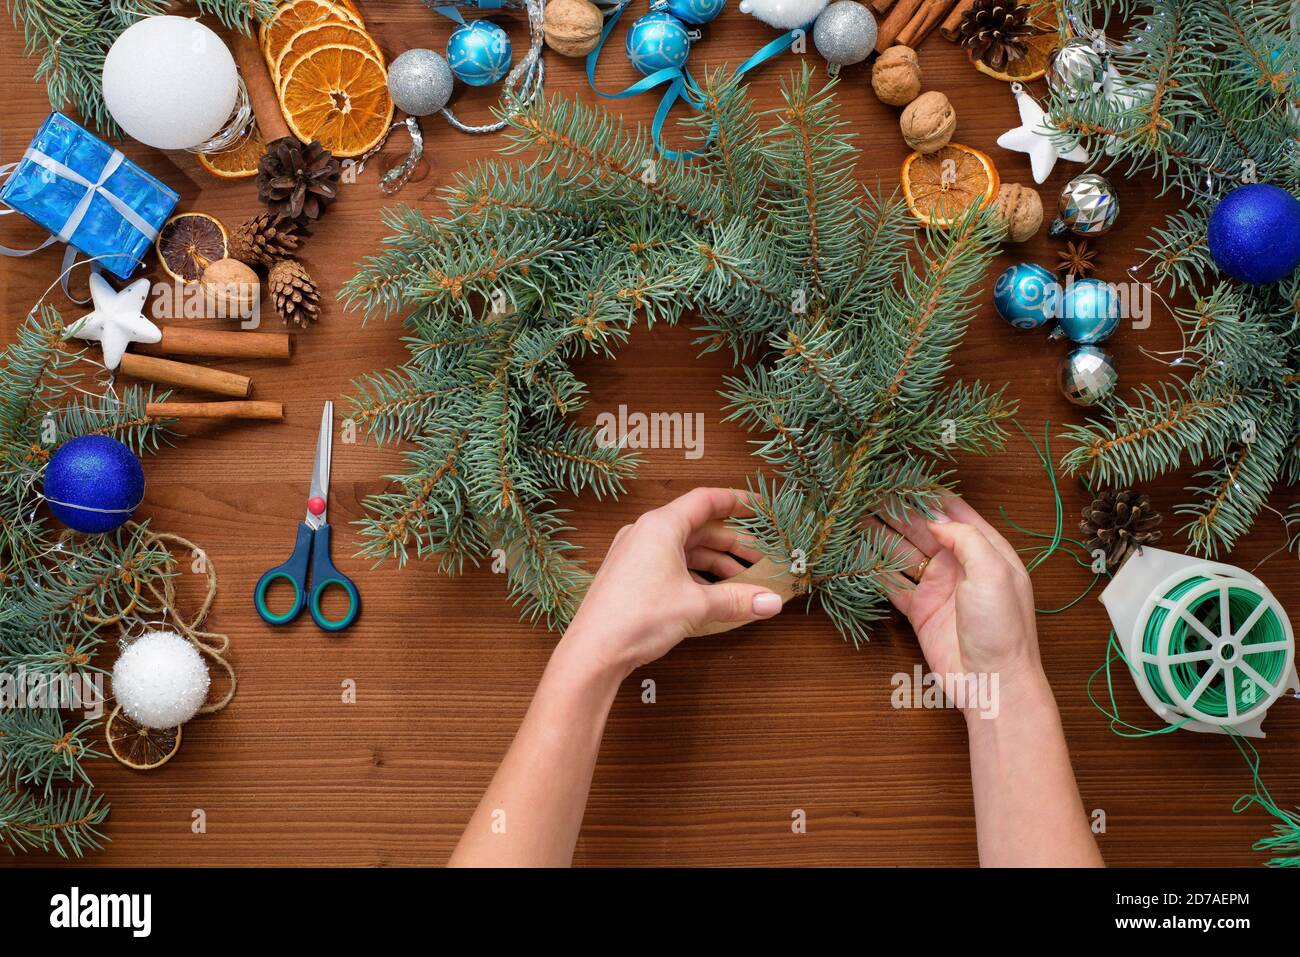 Schritt-für-Schritt-Prozess der Herstellung eines Weihnachtsbaumkranz zu Hause aus Fichtenzweigen, Orangen und Weihnachtskugeln in den silbernen und blauen Farben der Stockfoto